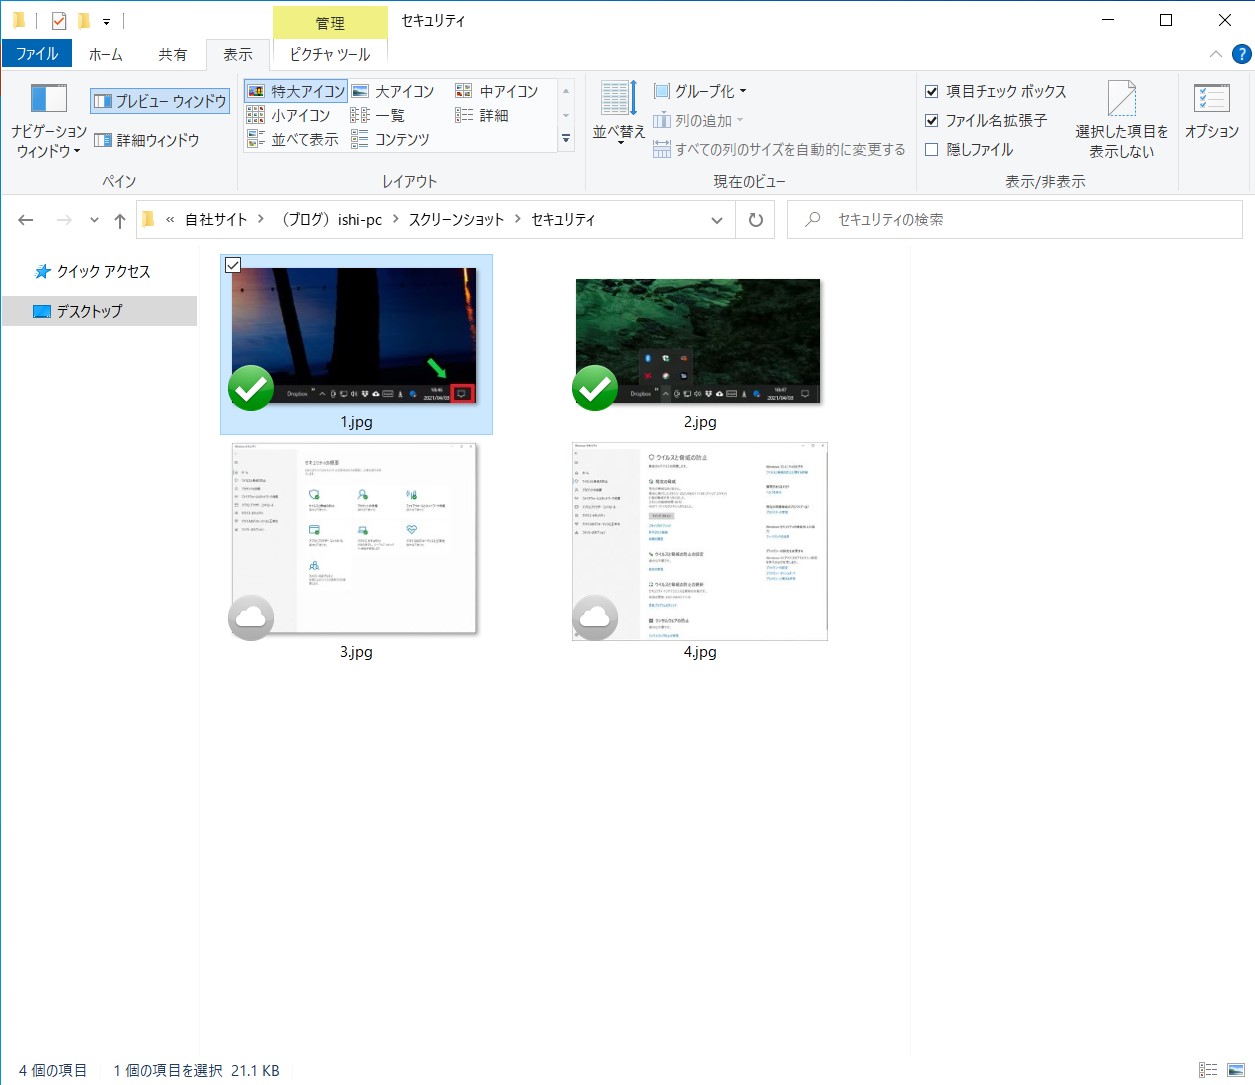 【Dropbox】ドロップボックスに保存したファイルを復元する方法【windows10】